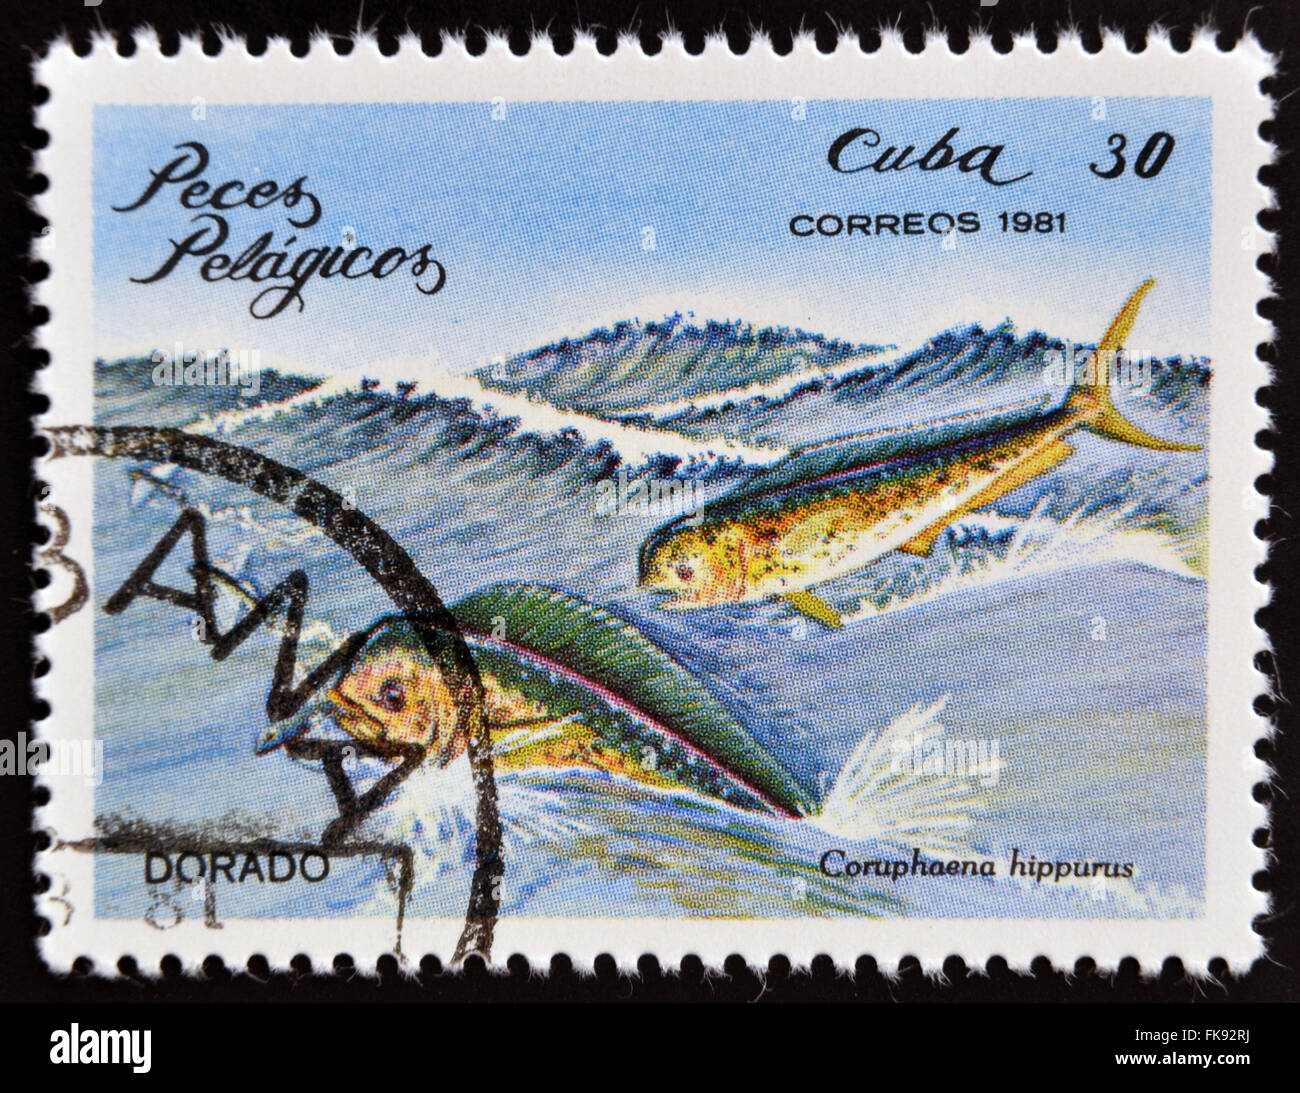 CUBA - circa 1981 : timbre imprimé en Cuba montre un Dorado avec l'inscription 'Coryphaena hippurus' Banque D'Images